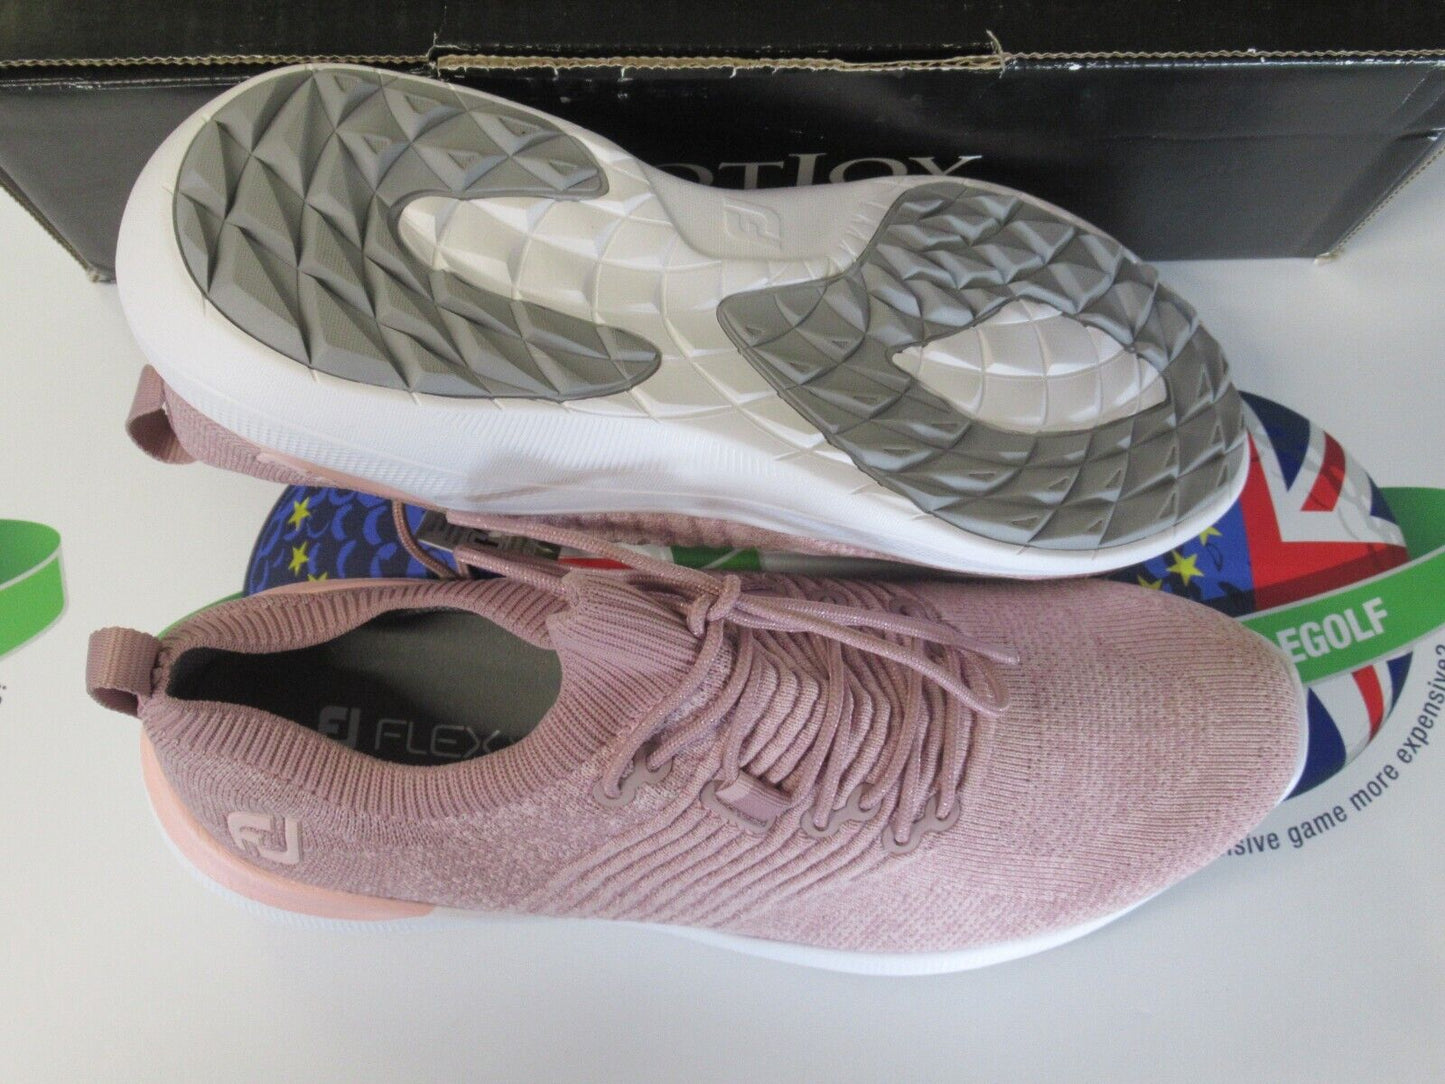 footjoy flex xp womens golf shoes pink heather 95335k uk size 7 medium